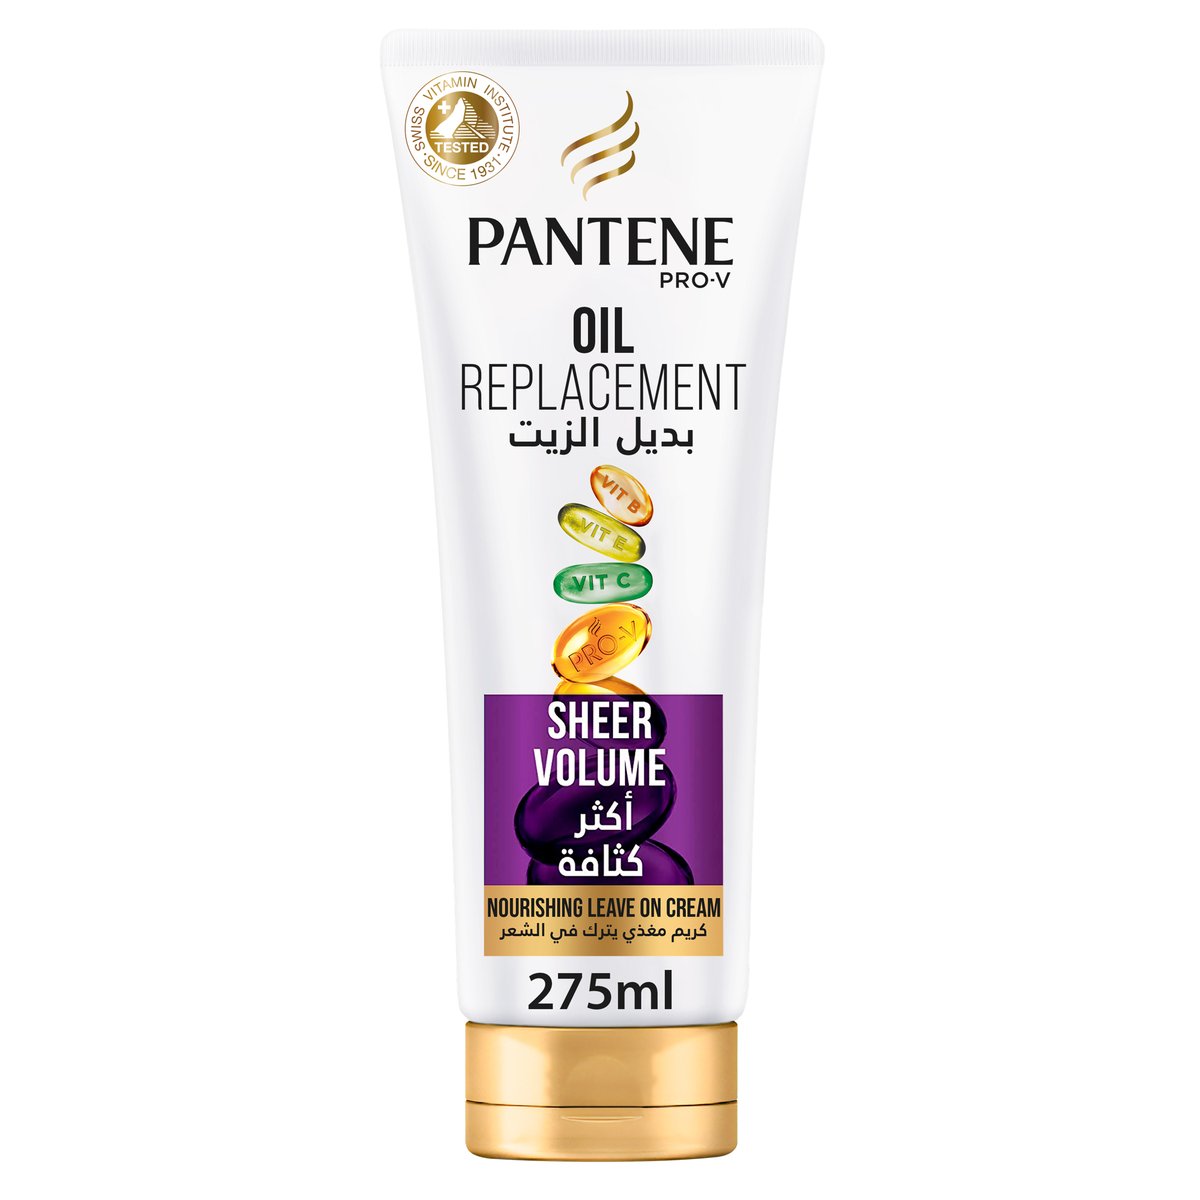 Pantene Pro-V Hair Oil Replacement Leave On Cream Sheer Volume 275 ml